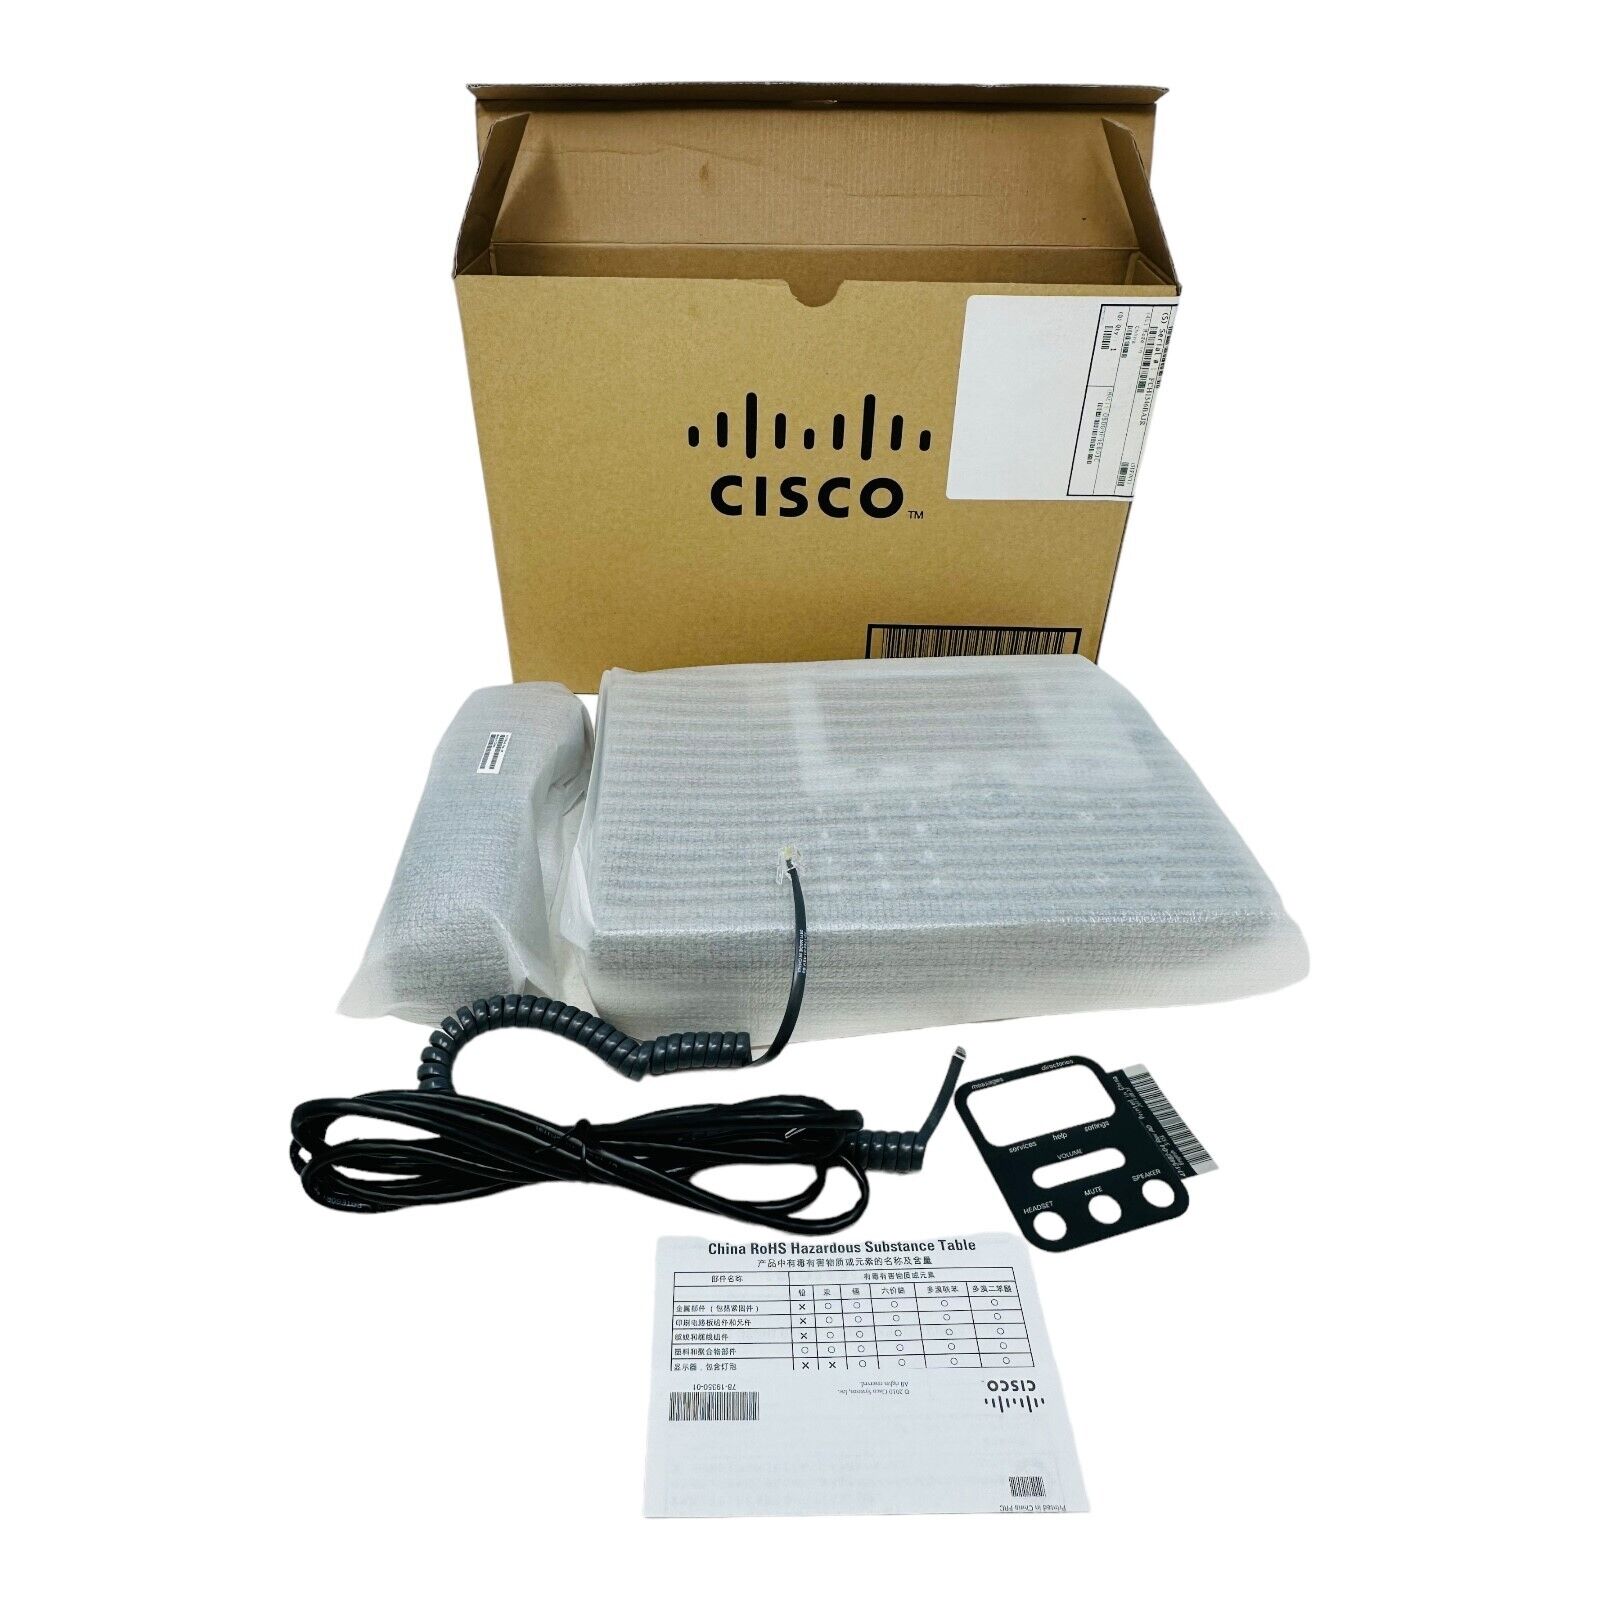 Cisco 7945G Gigabit IP Phone - CP-7945G NEW/UNUSED SURPLUS